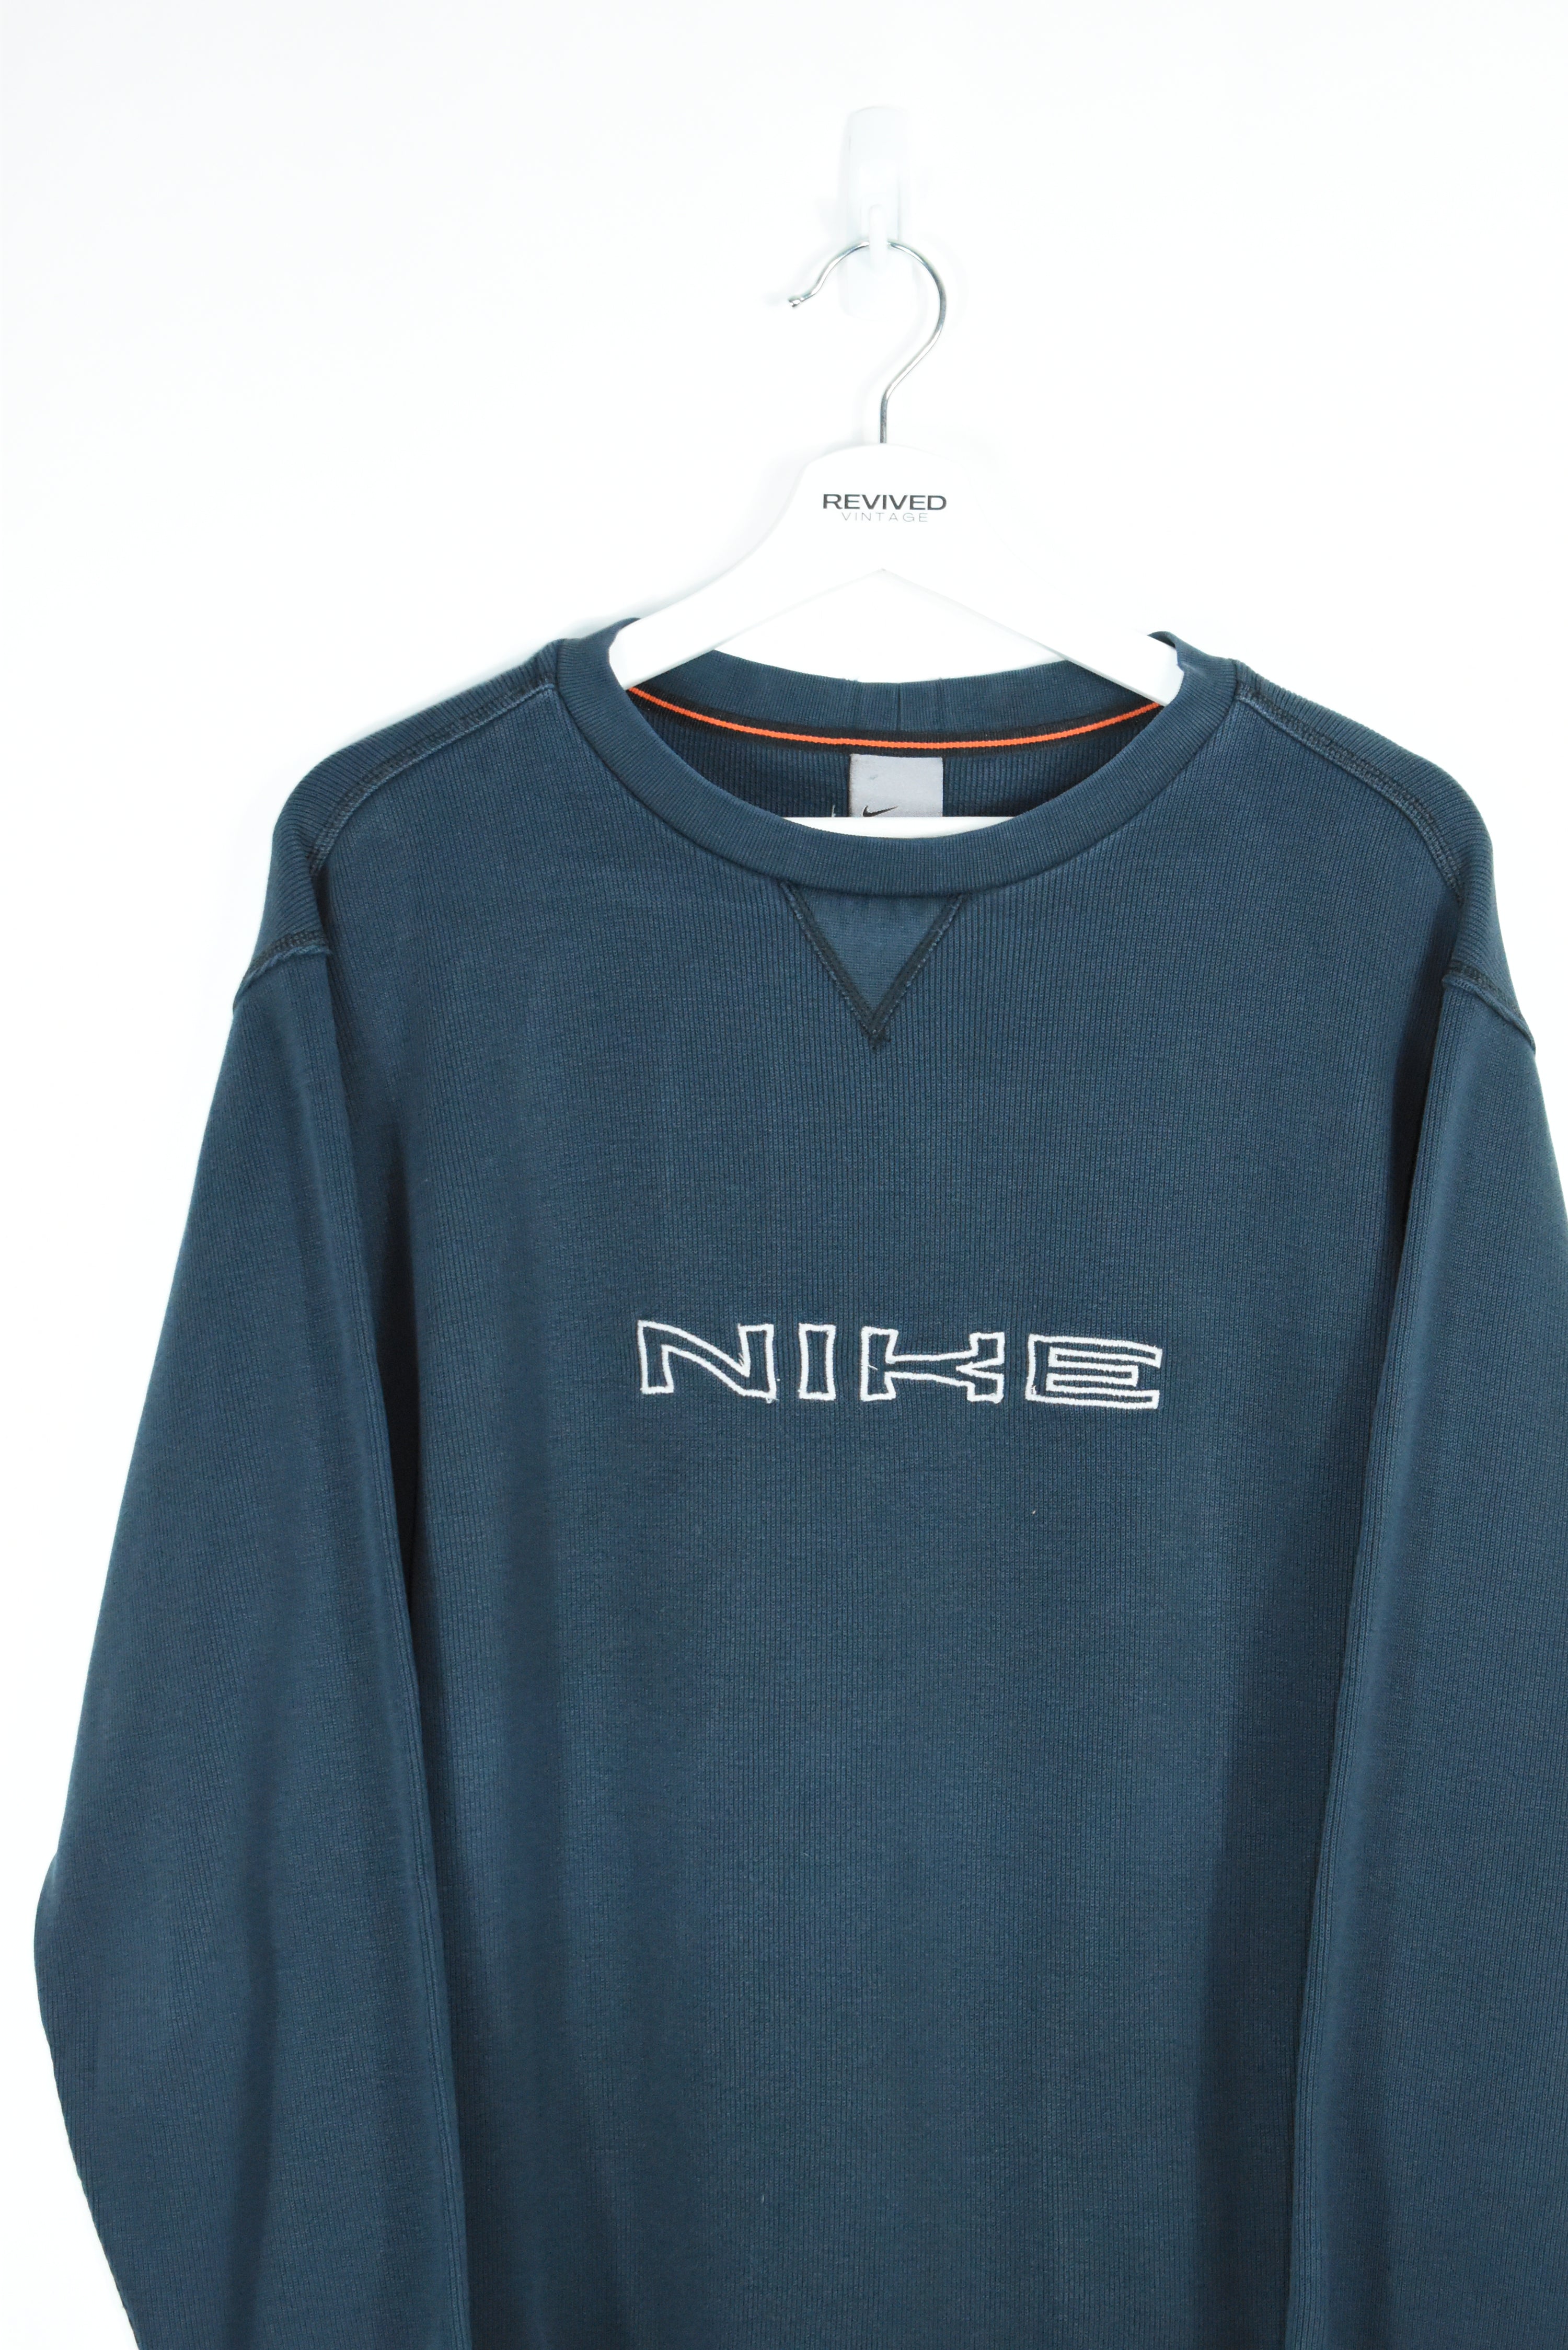 Vintage Nike Embroidery Sweatshirt MEDIUM